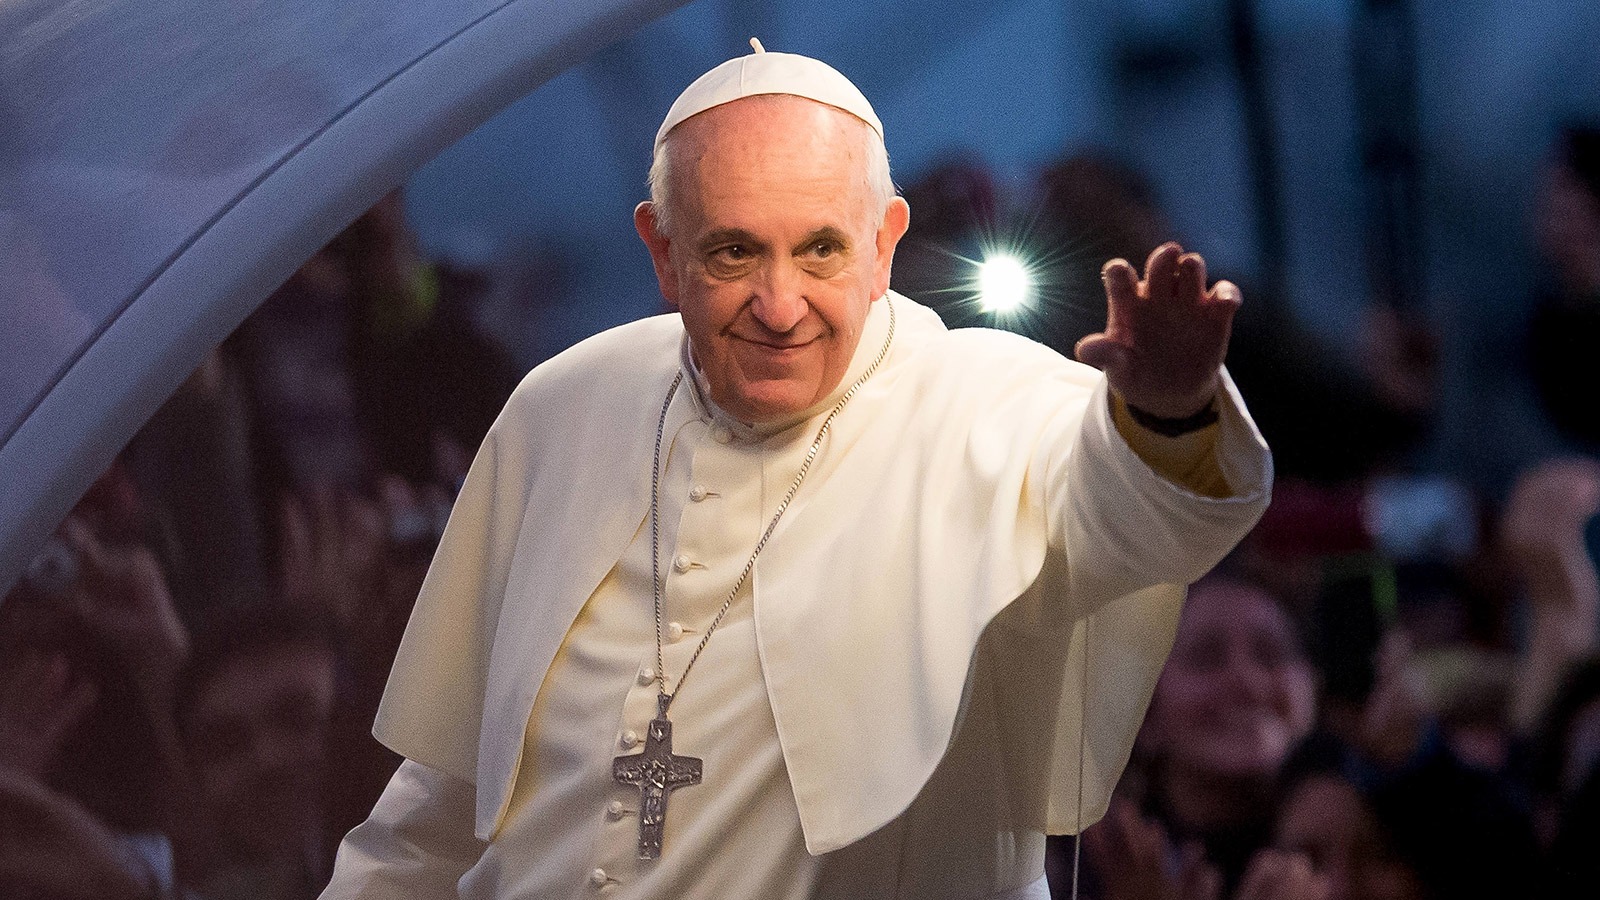 Франциск (папа Римский). Понтифик папа Римский Франциск. Франциск (папа Римский) фото. Франциск 1 папа Римский.